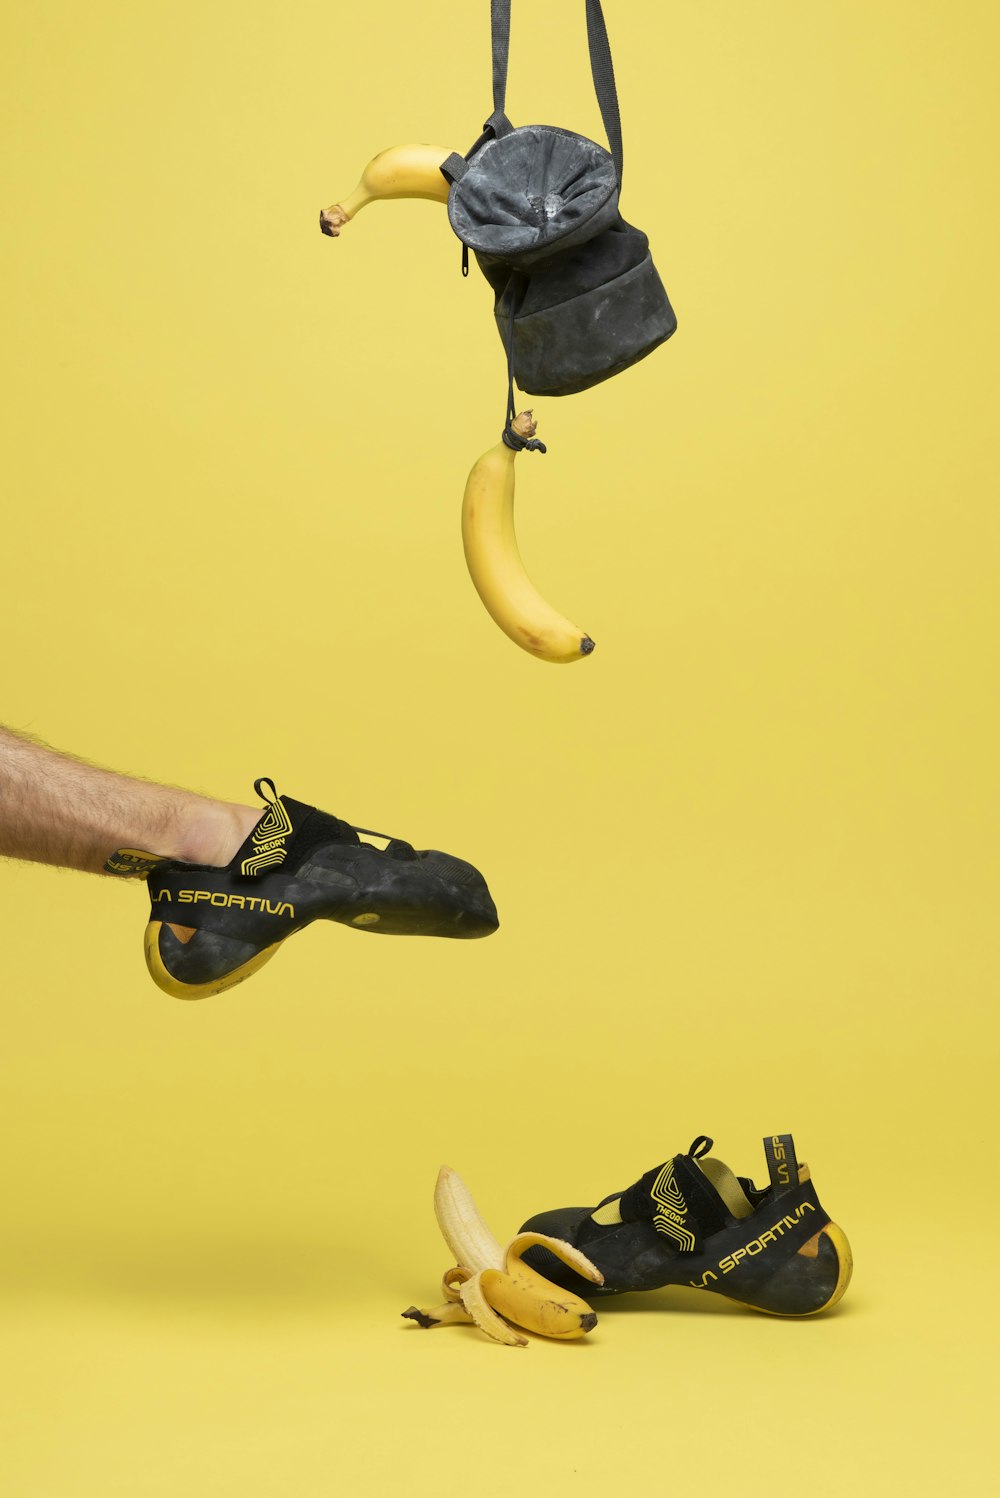 신발 한 켤레 옆에 끈에 매달린 바나나